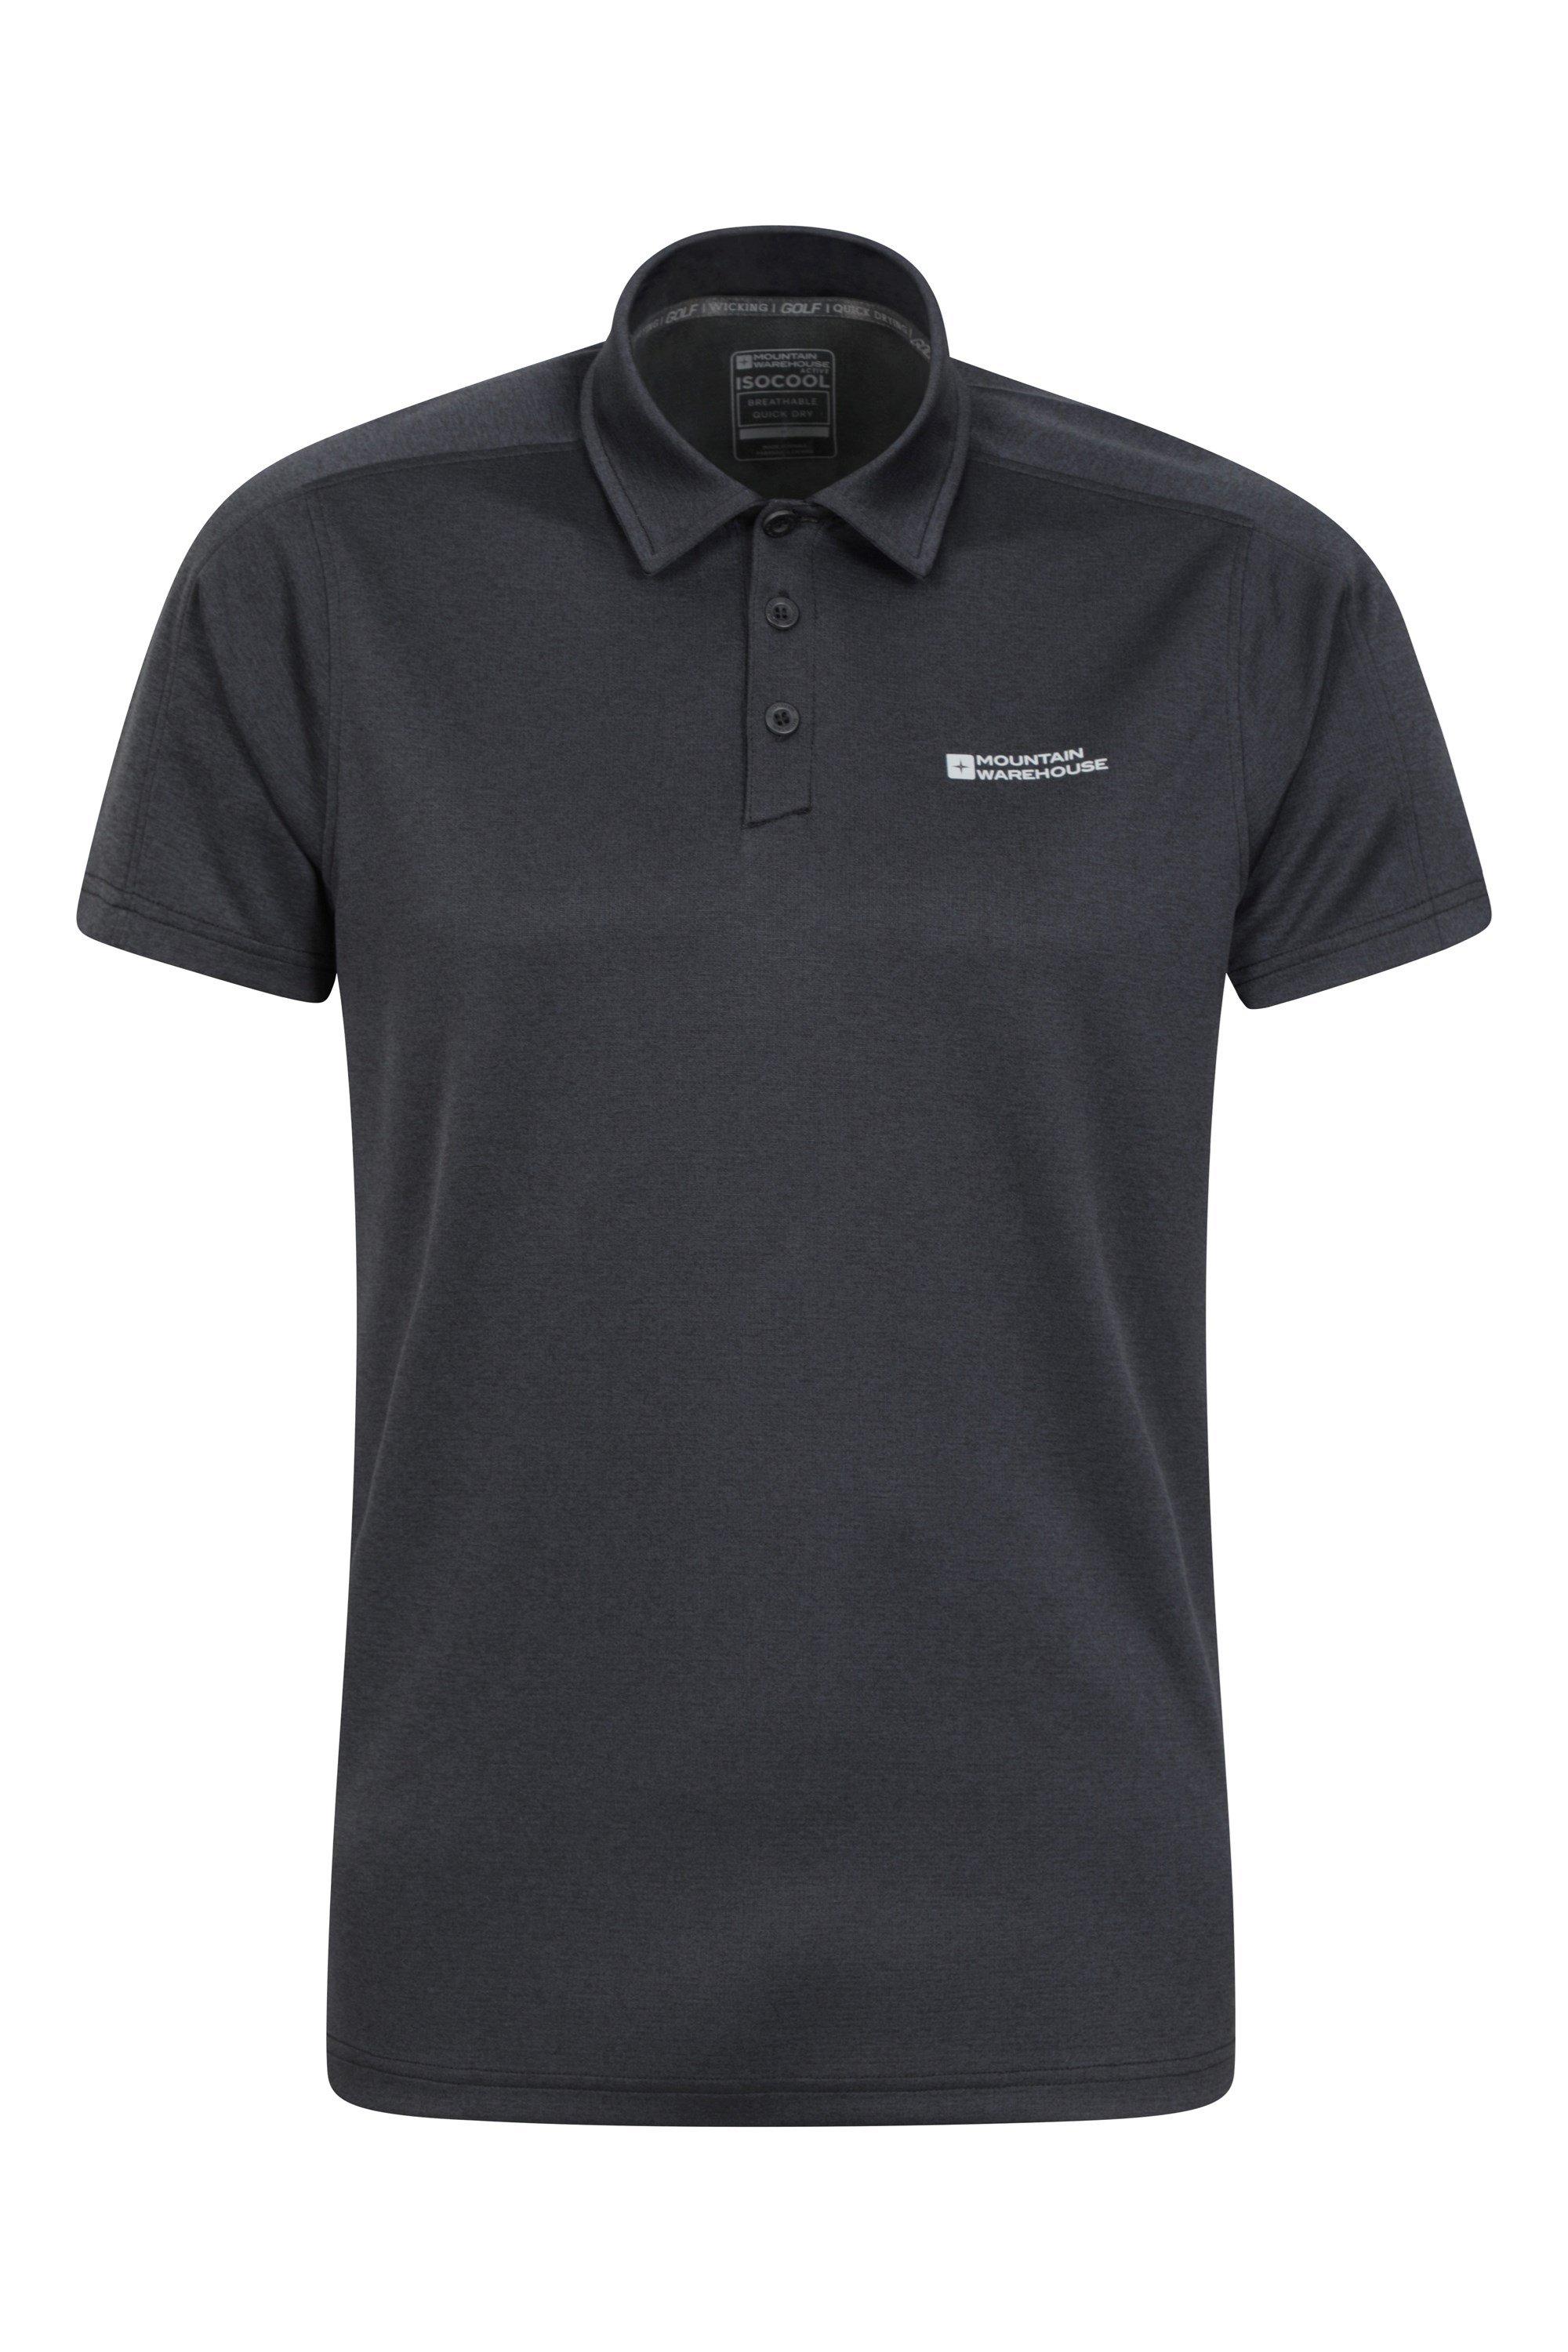 Клубная меланжевая рубашка-поло IsoCool, повседневный топ с короткими рукавами Mountain Warehouse, черный